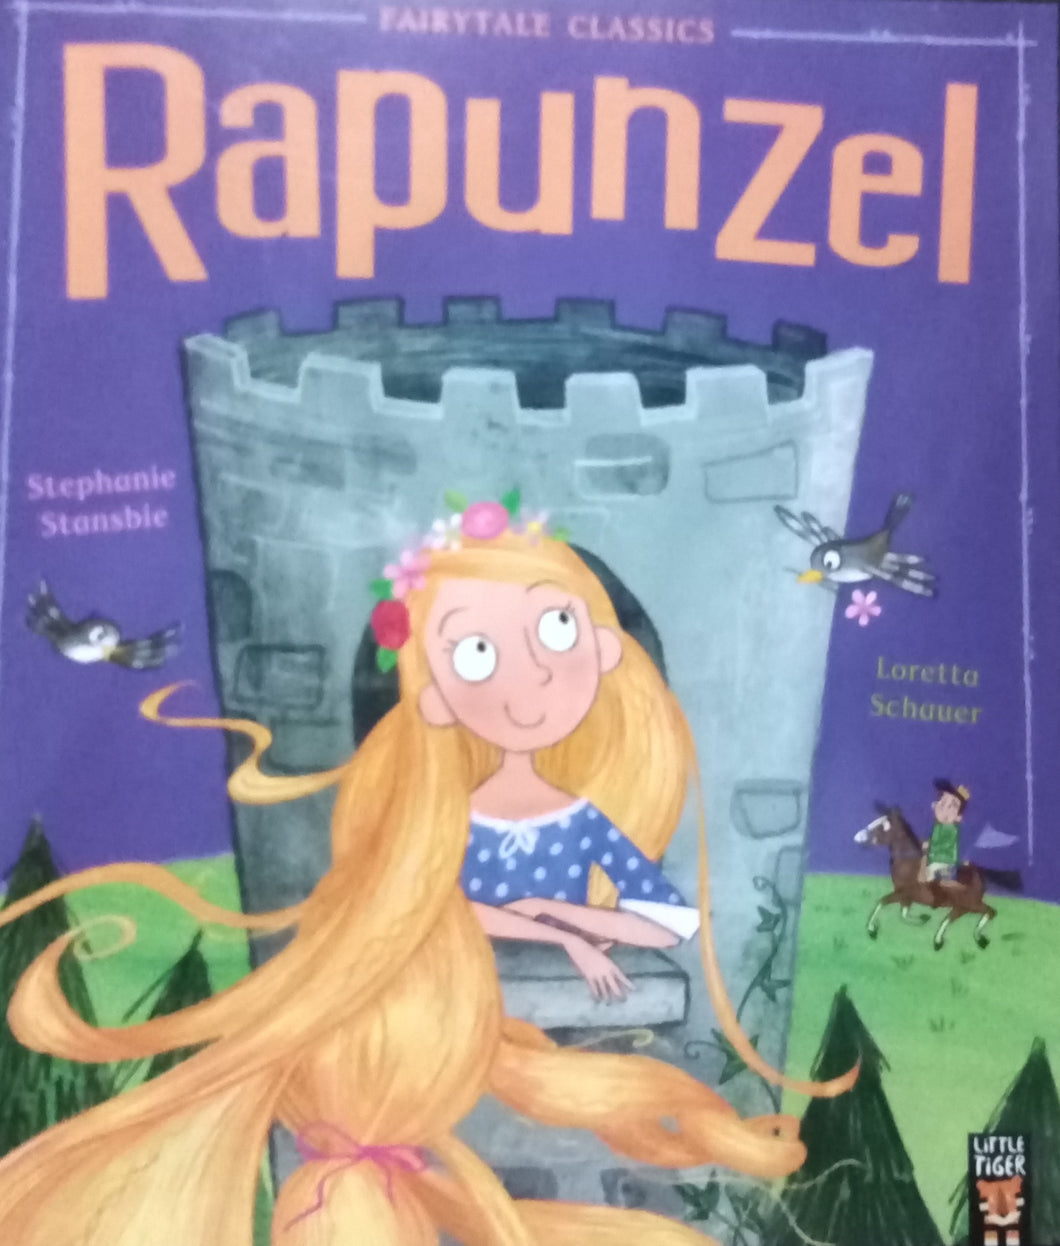 Rapunzel by Stephanie Stansbie